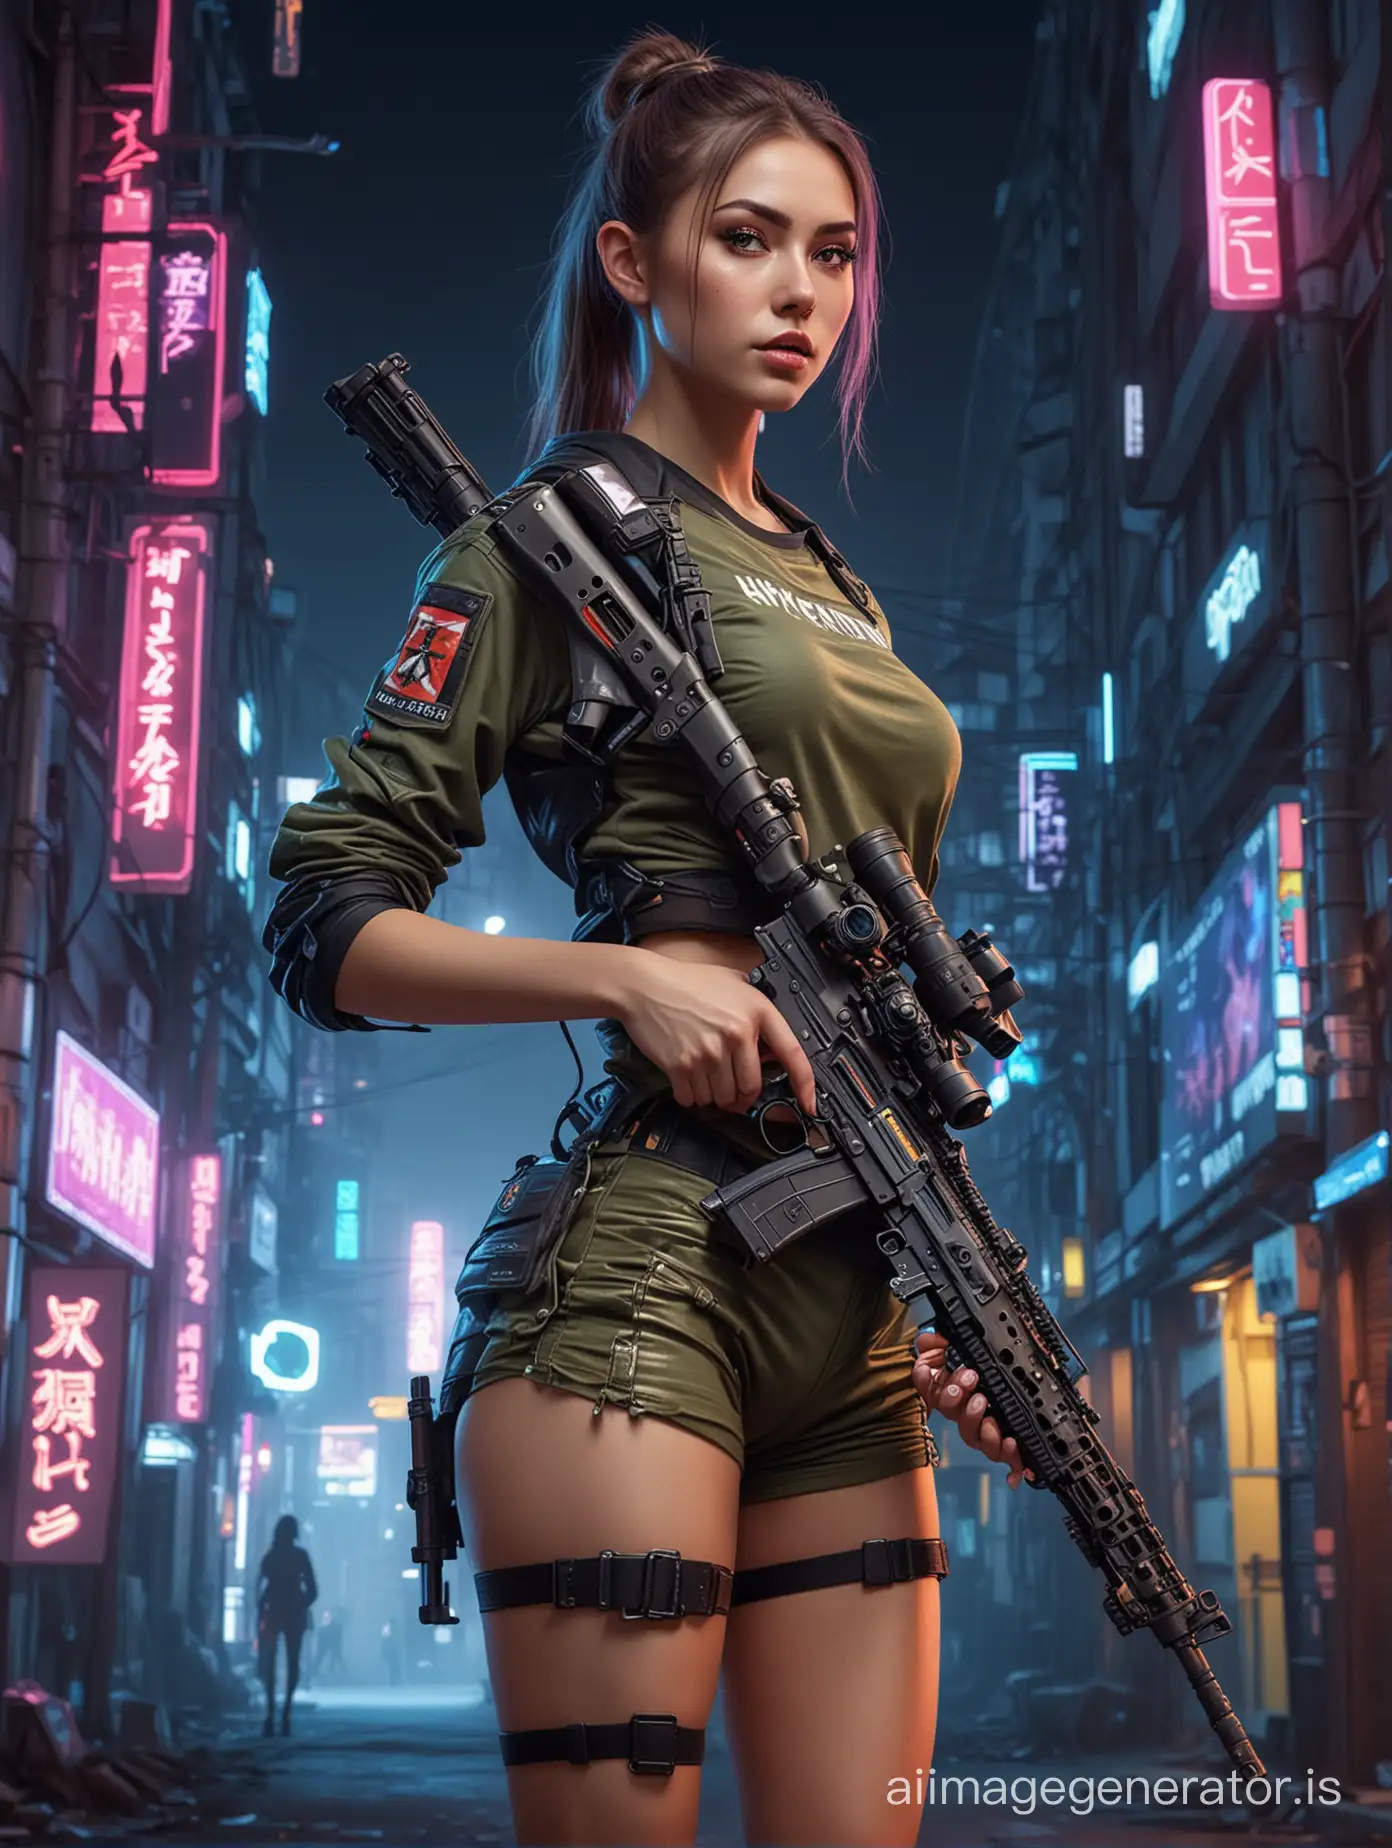 Cyberpunk-Sniper-Girl-in-Urban-Night-Setting